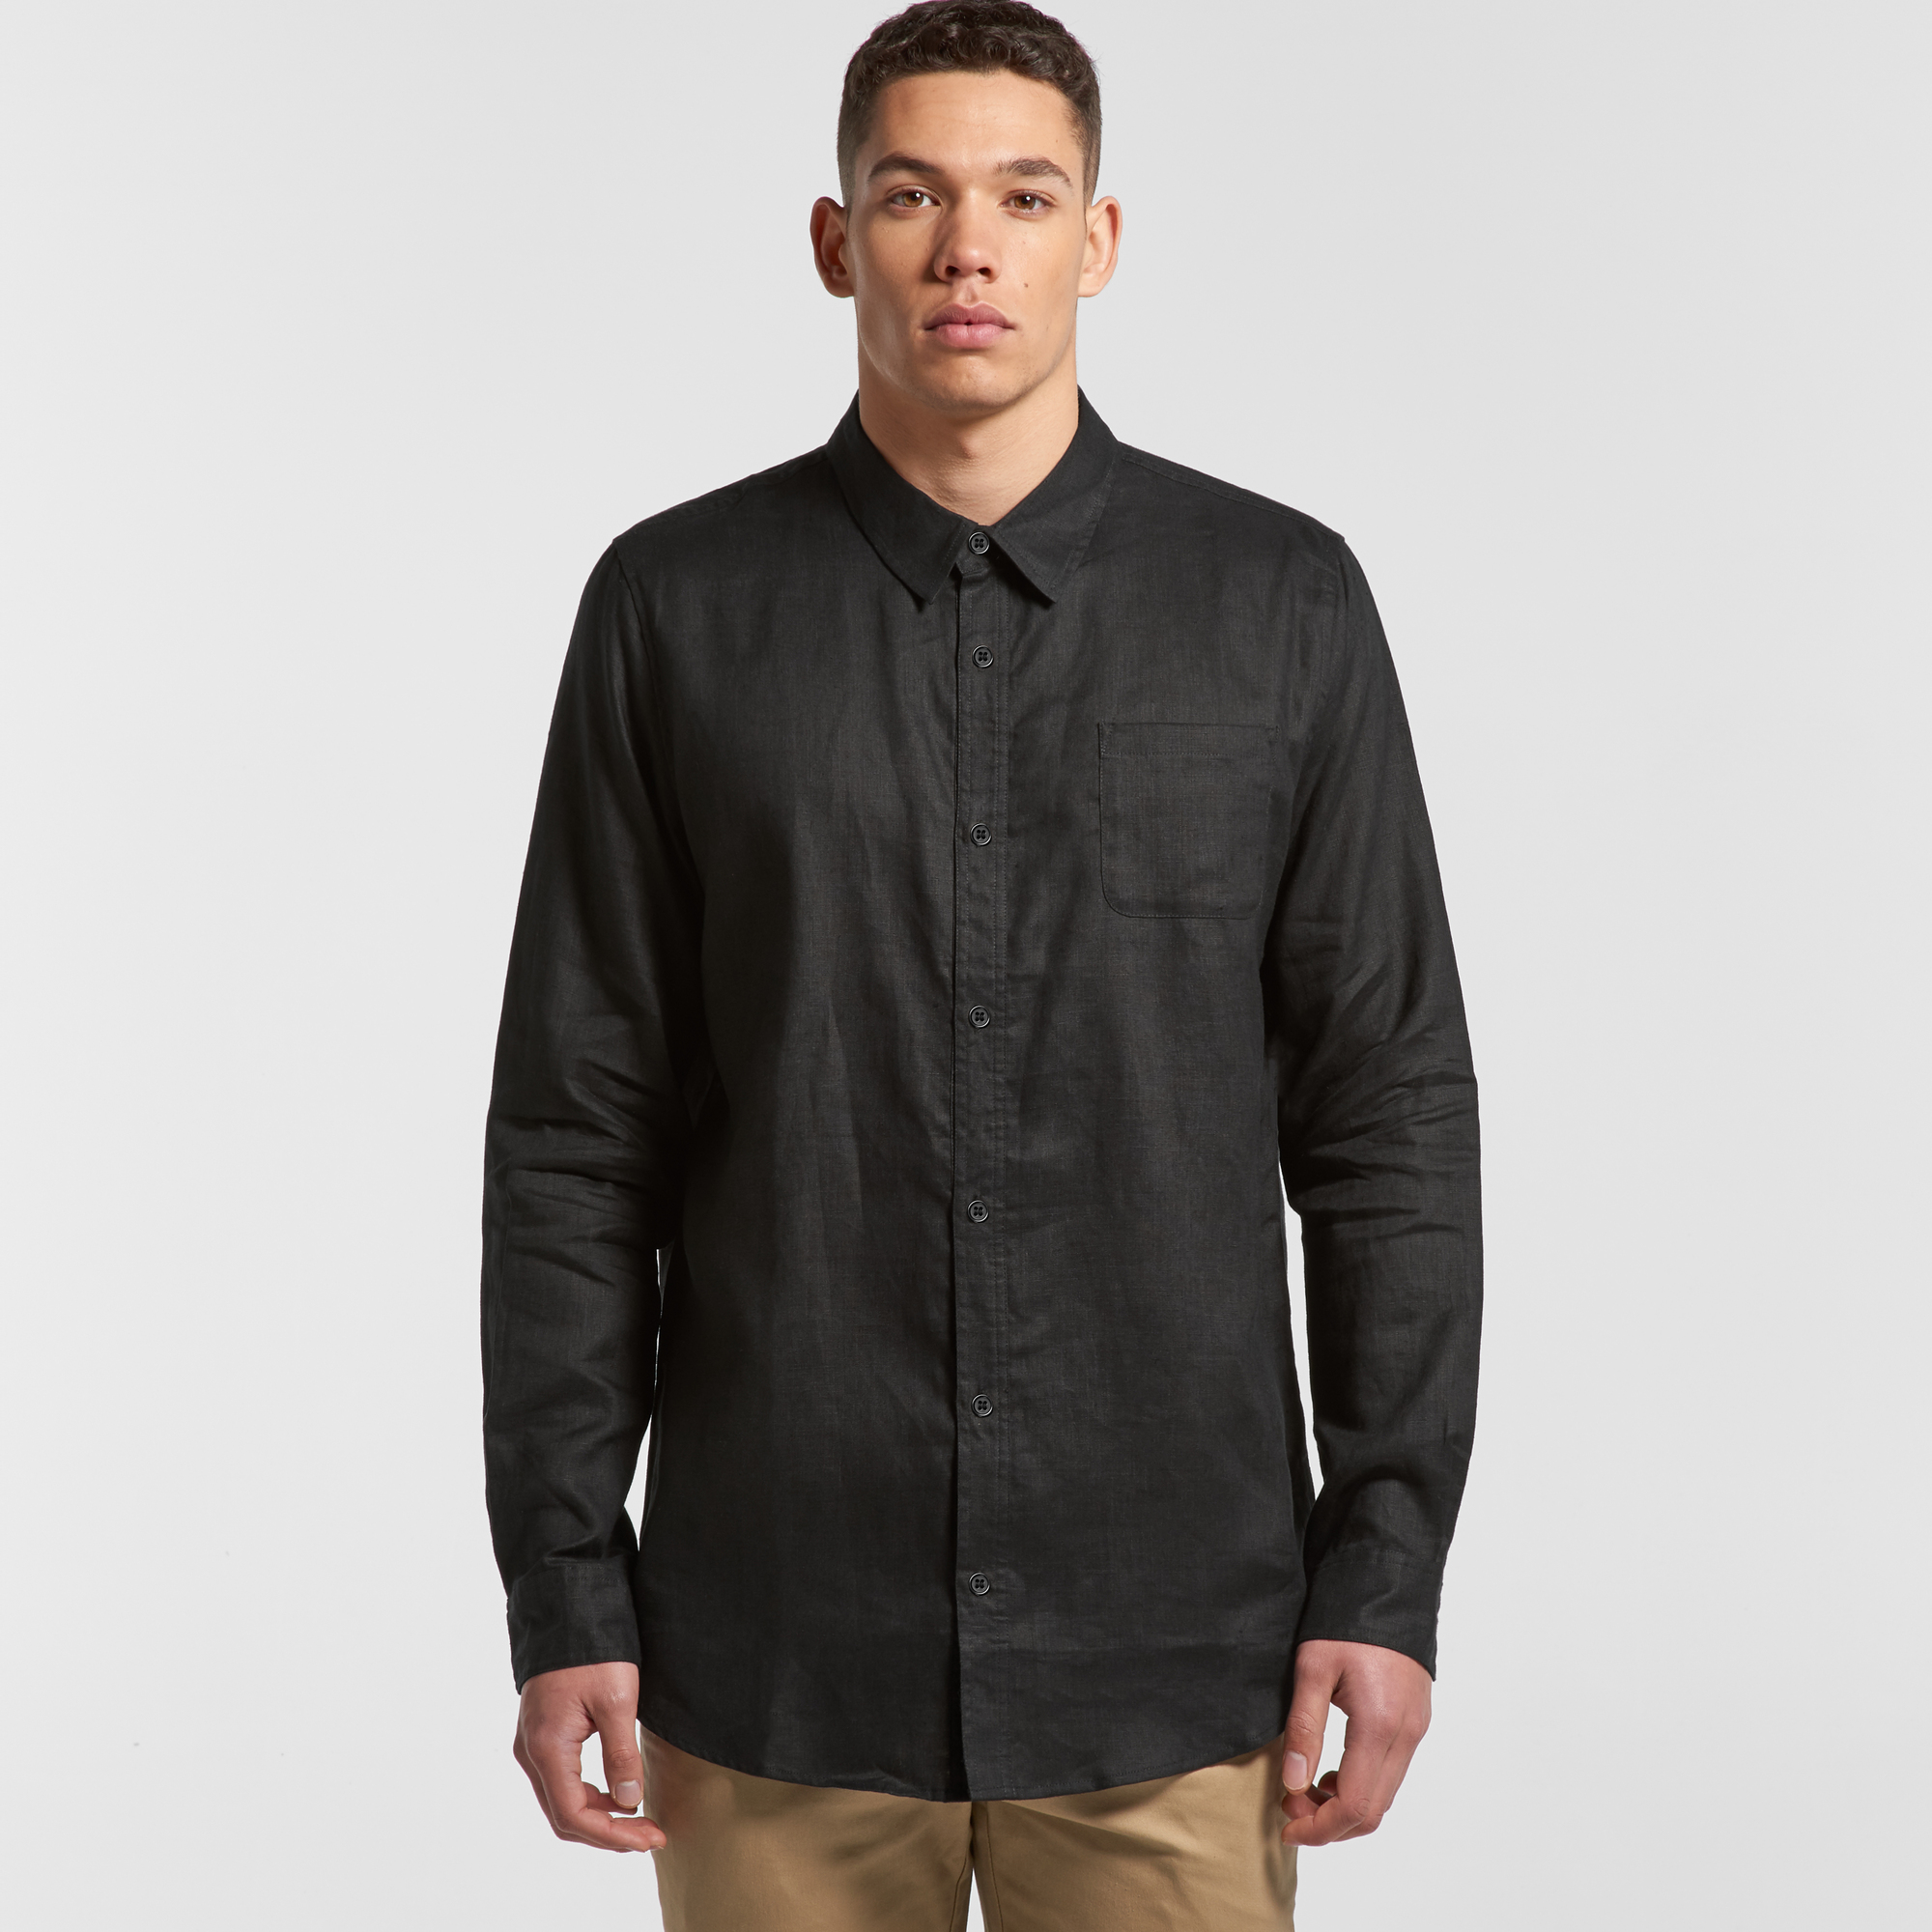 Men's Linen Shirt | Branded Linen Shirt | Printed Linen Shirt NZ | AS Colour | Withers & Co